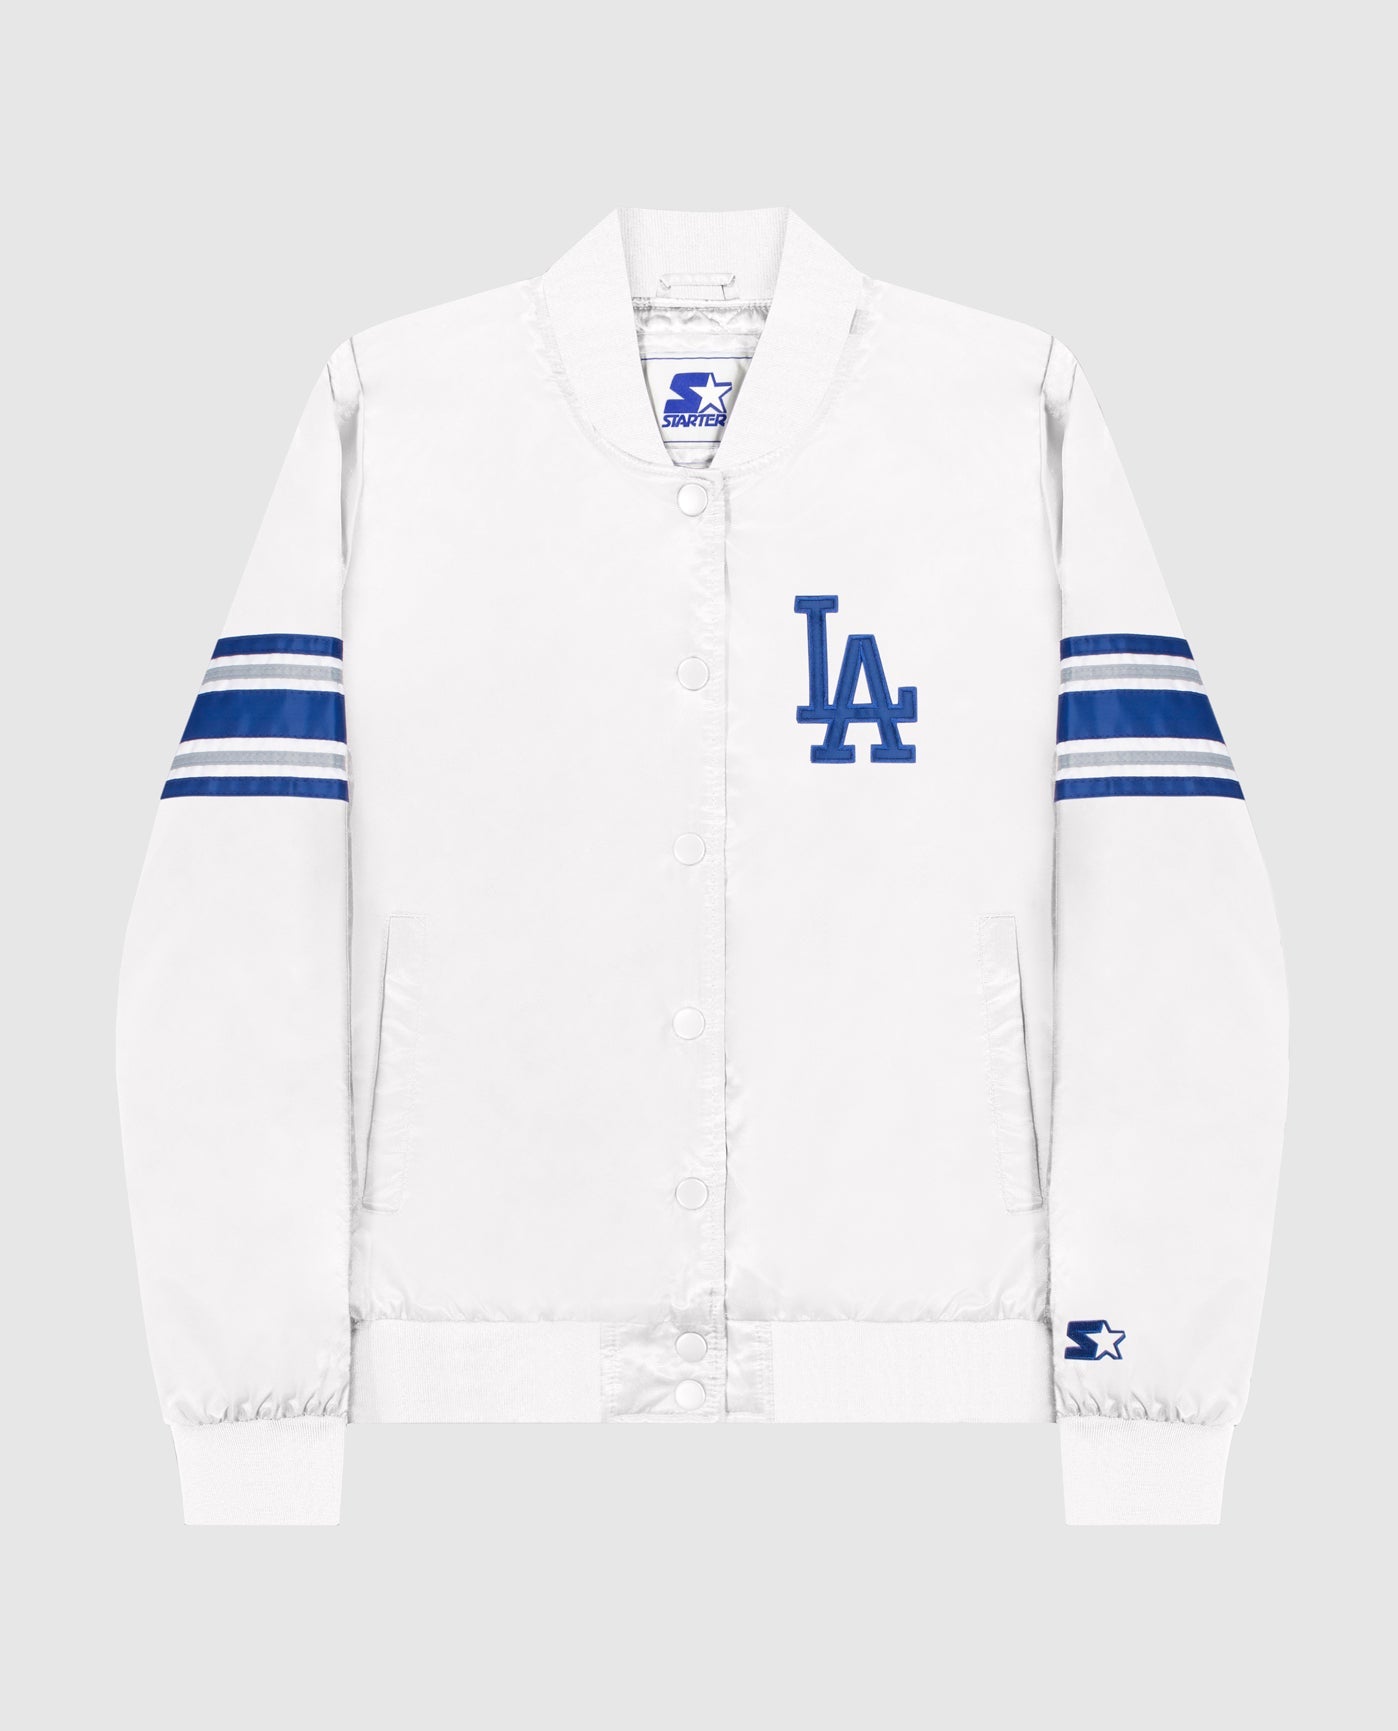 Starter Los Angeles Dodgers Jacket Blue/White